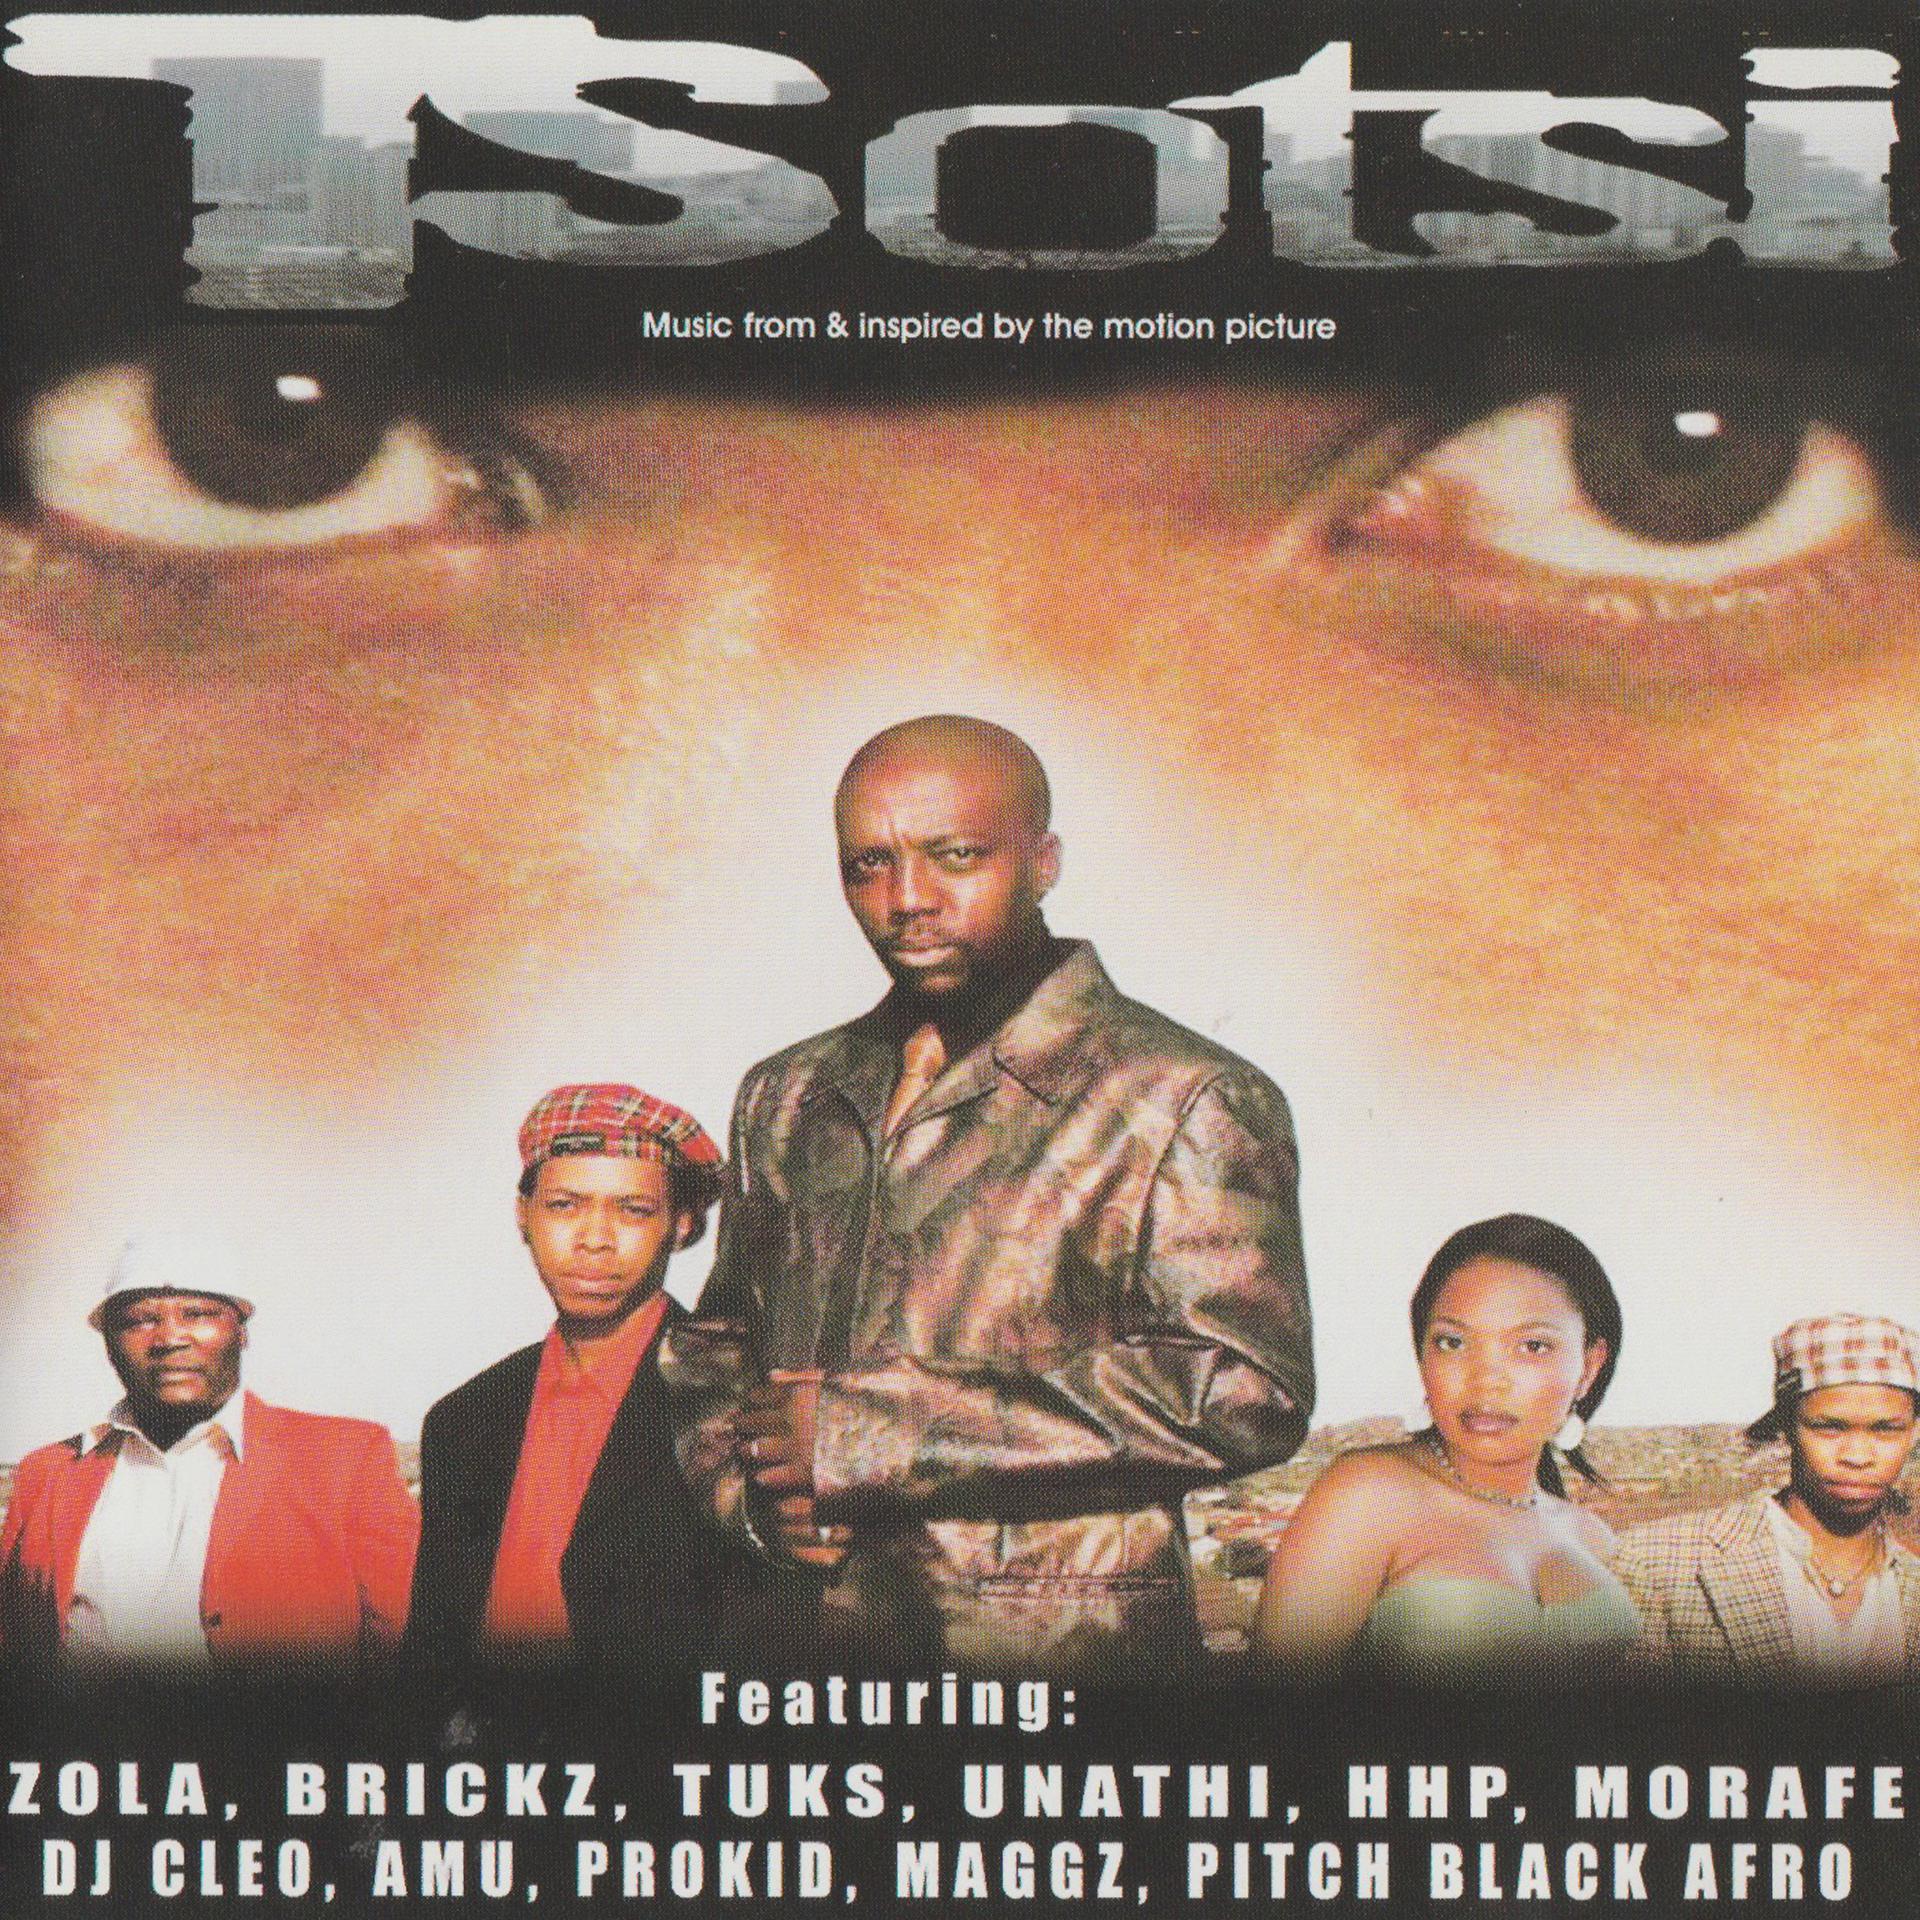 Постер альбома Tsotsi